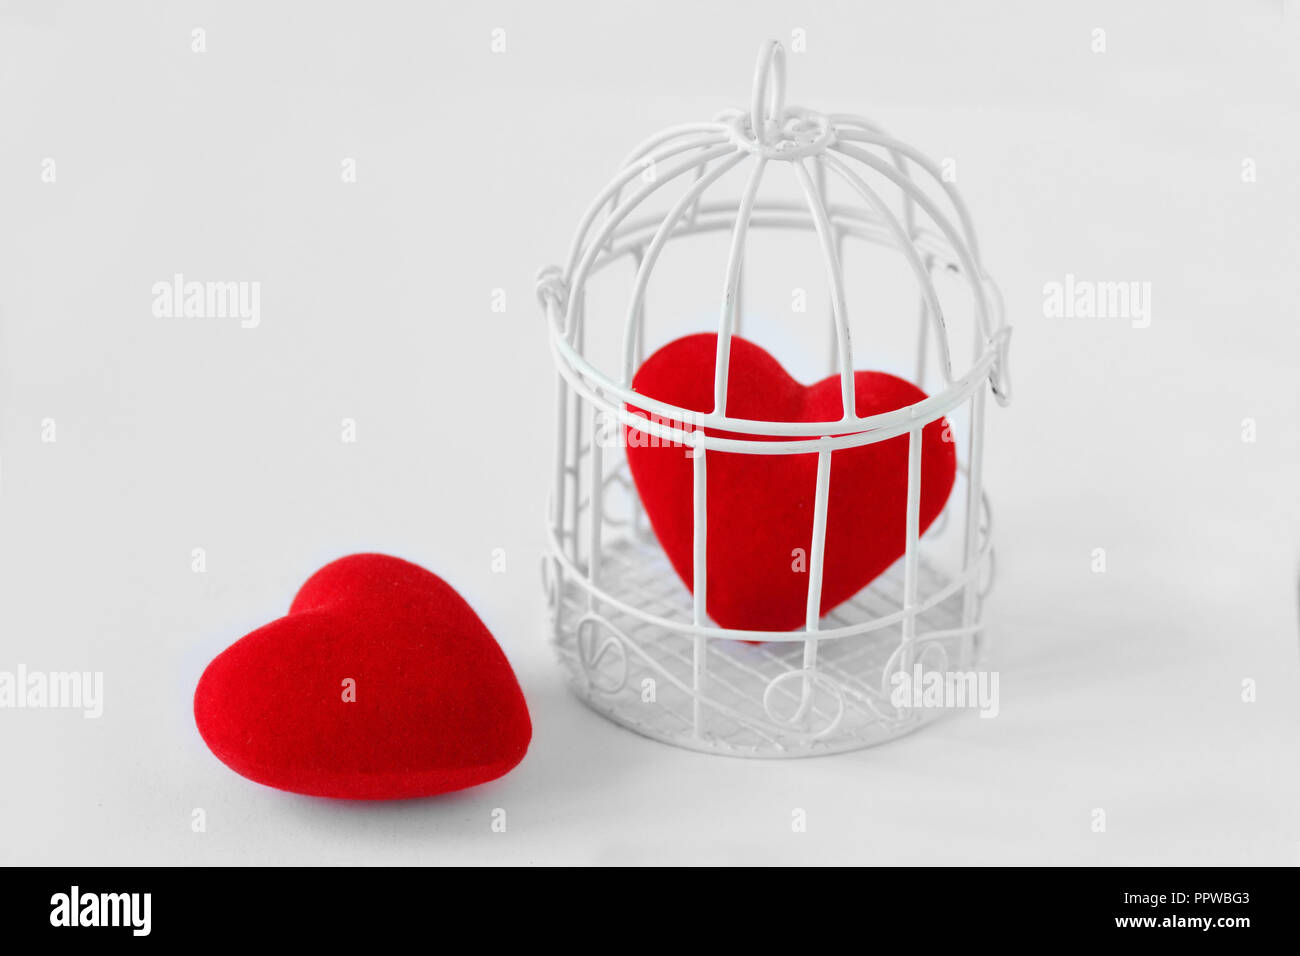 Herzen in einem Vogelkäfig und freiem Herzen - Liebe und Freiheit Konzept Stockfoto